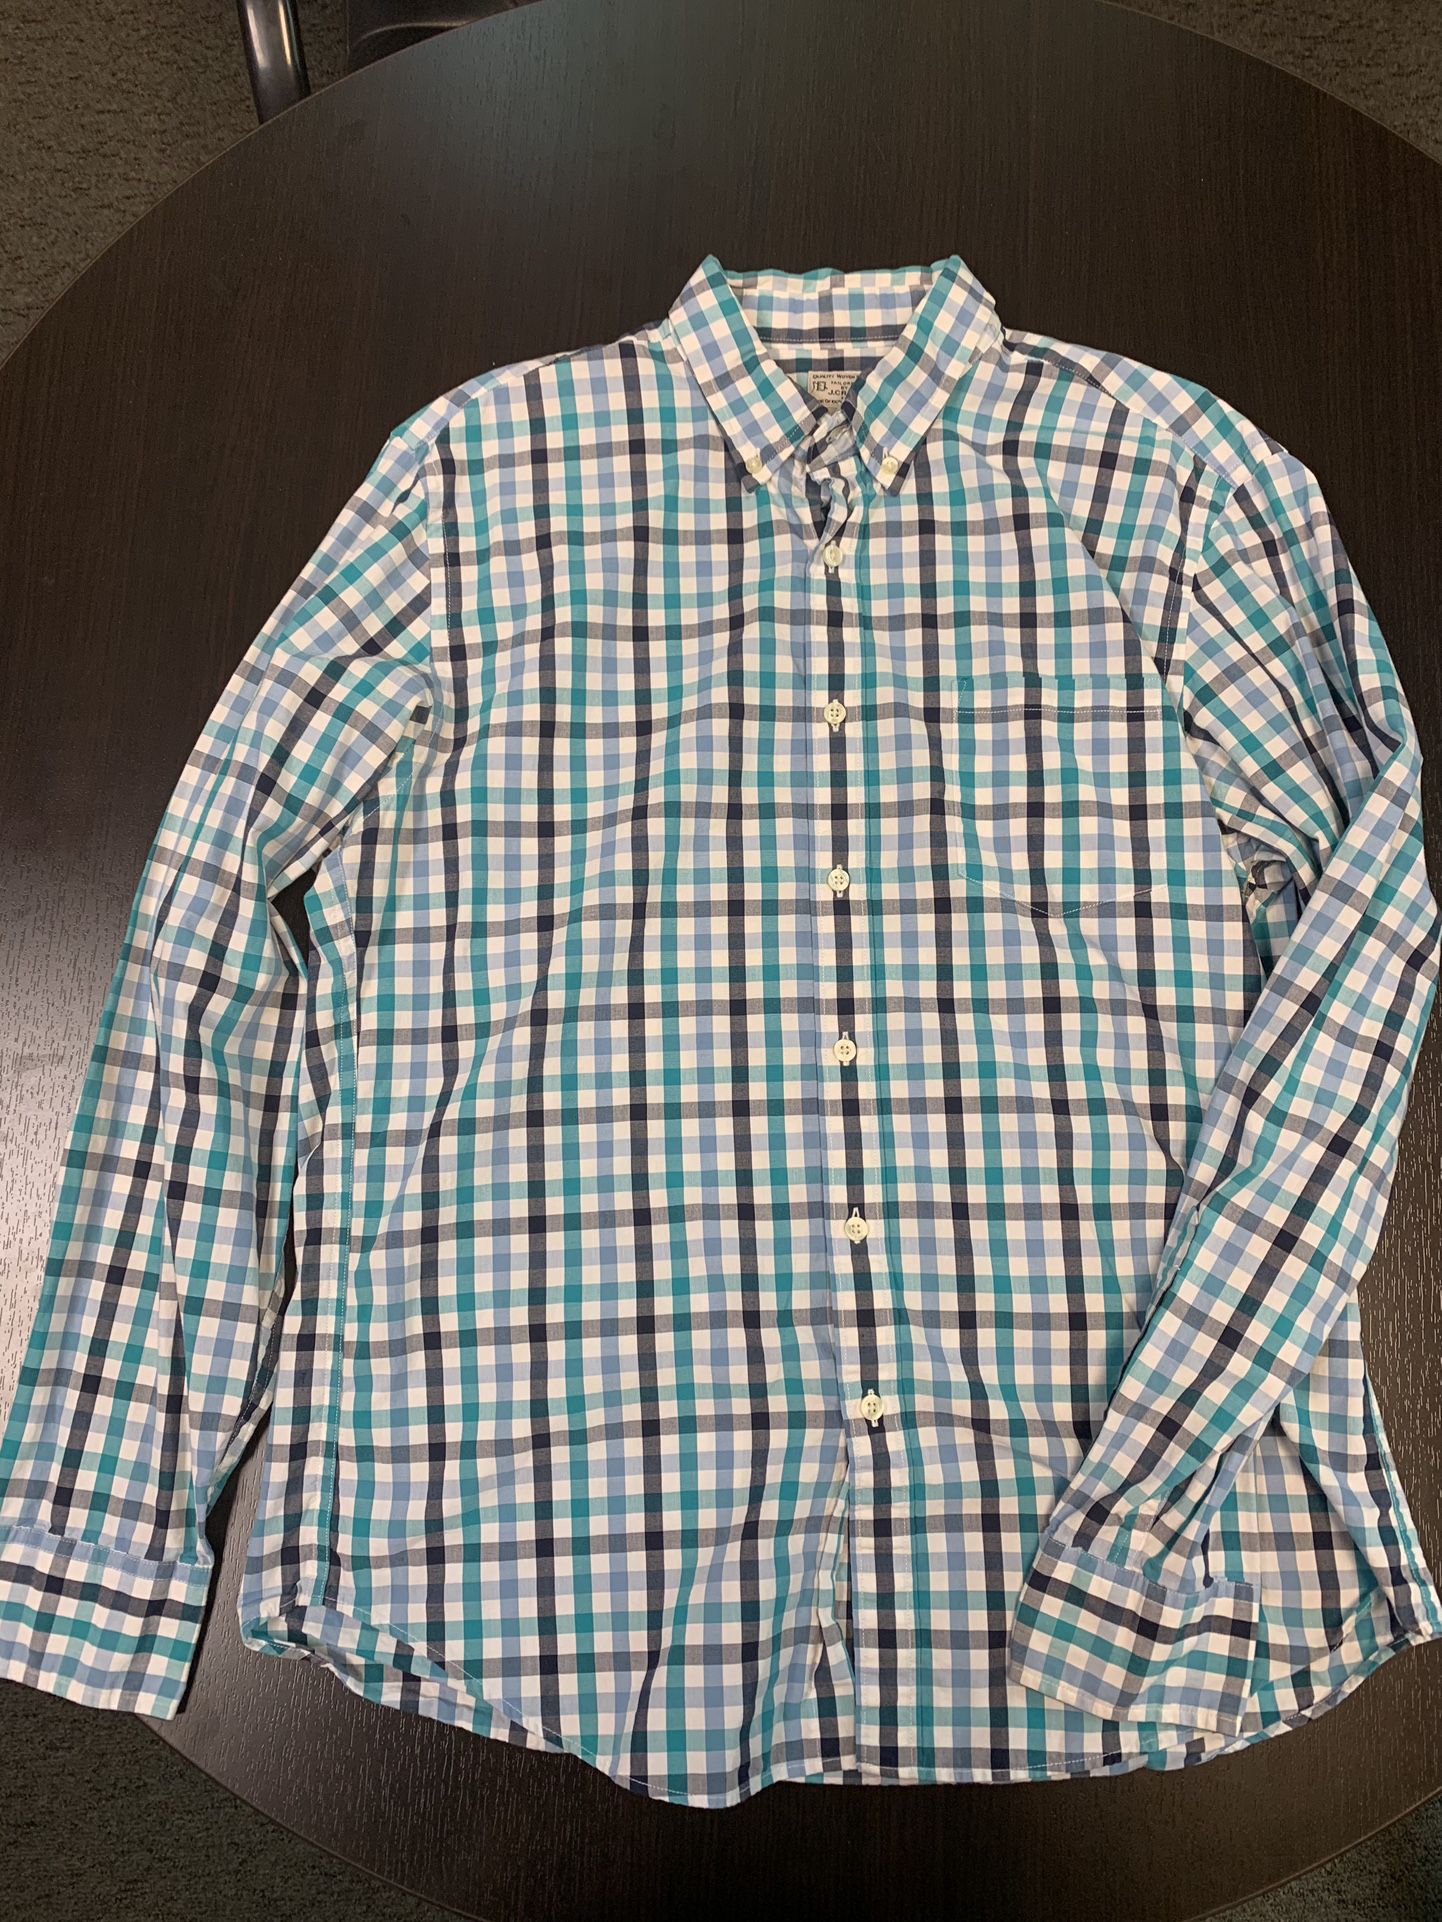 Vintage J. Crew 100% Cotton Button Down Shirt 